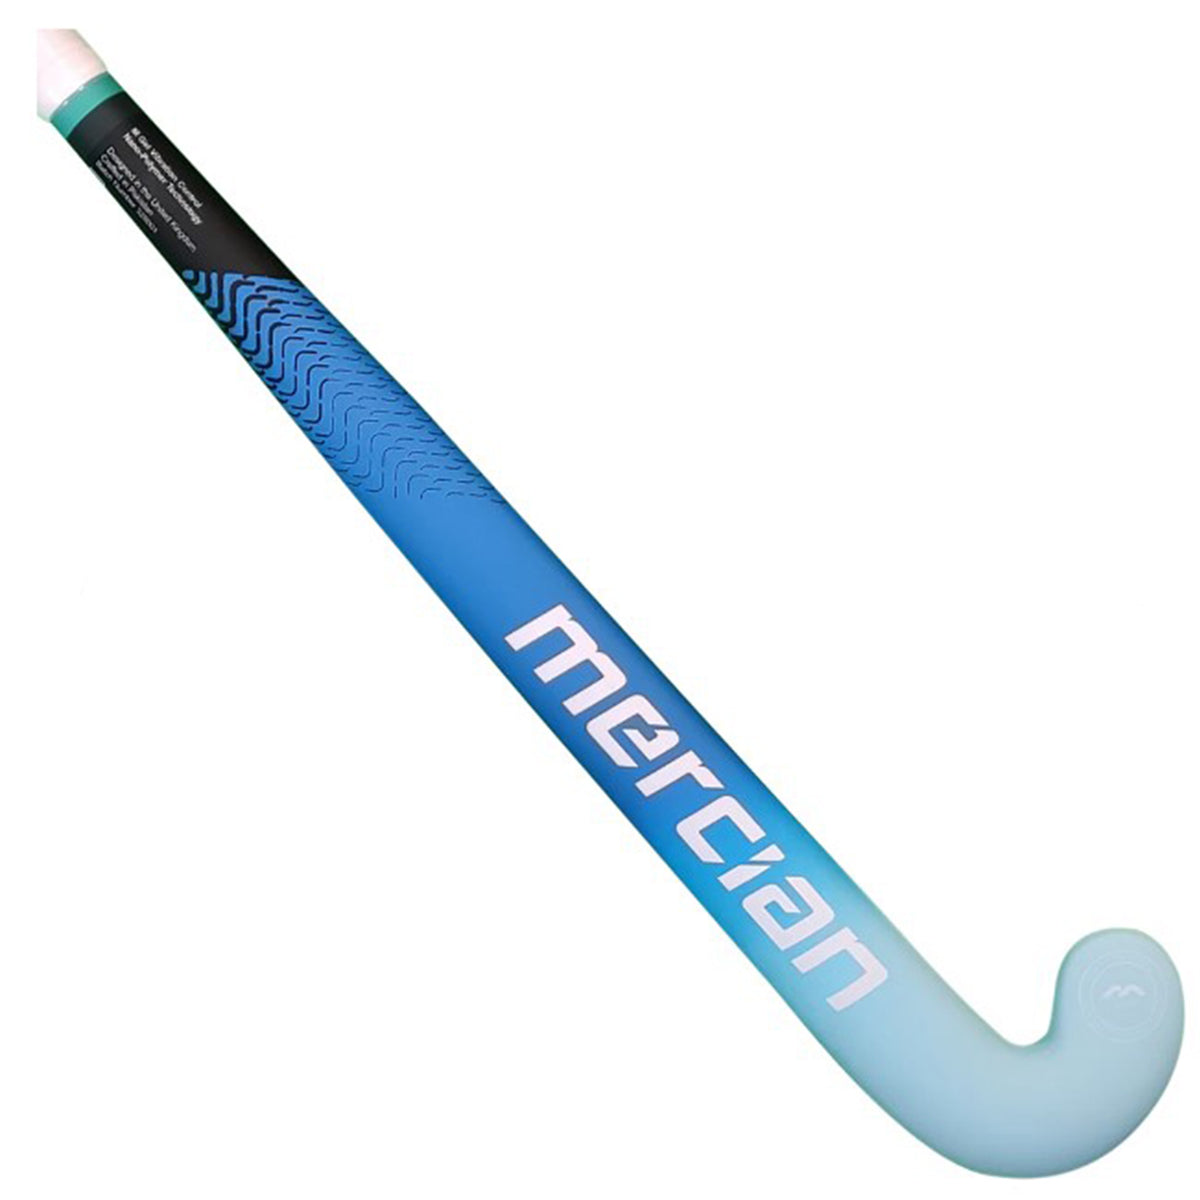 Mercian Genesis CF5 Pro Junior Hockey Stick: Moonlight Blue